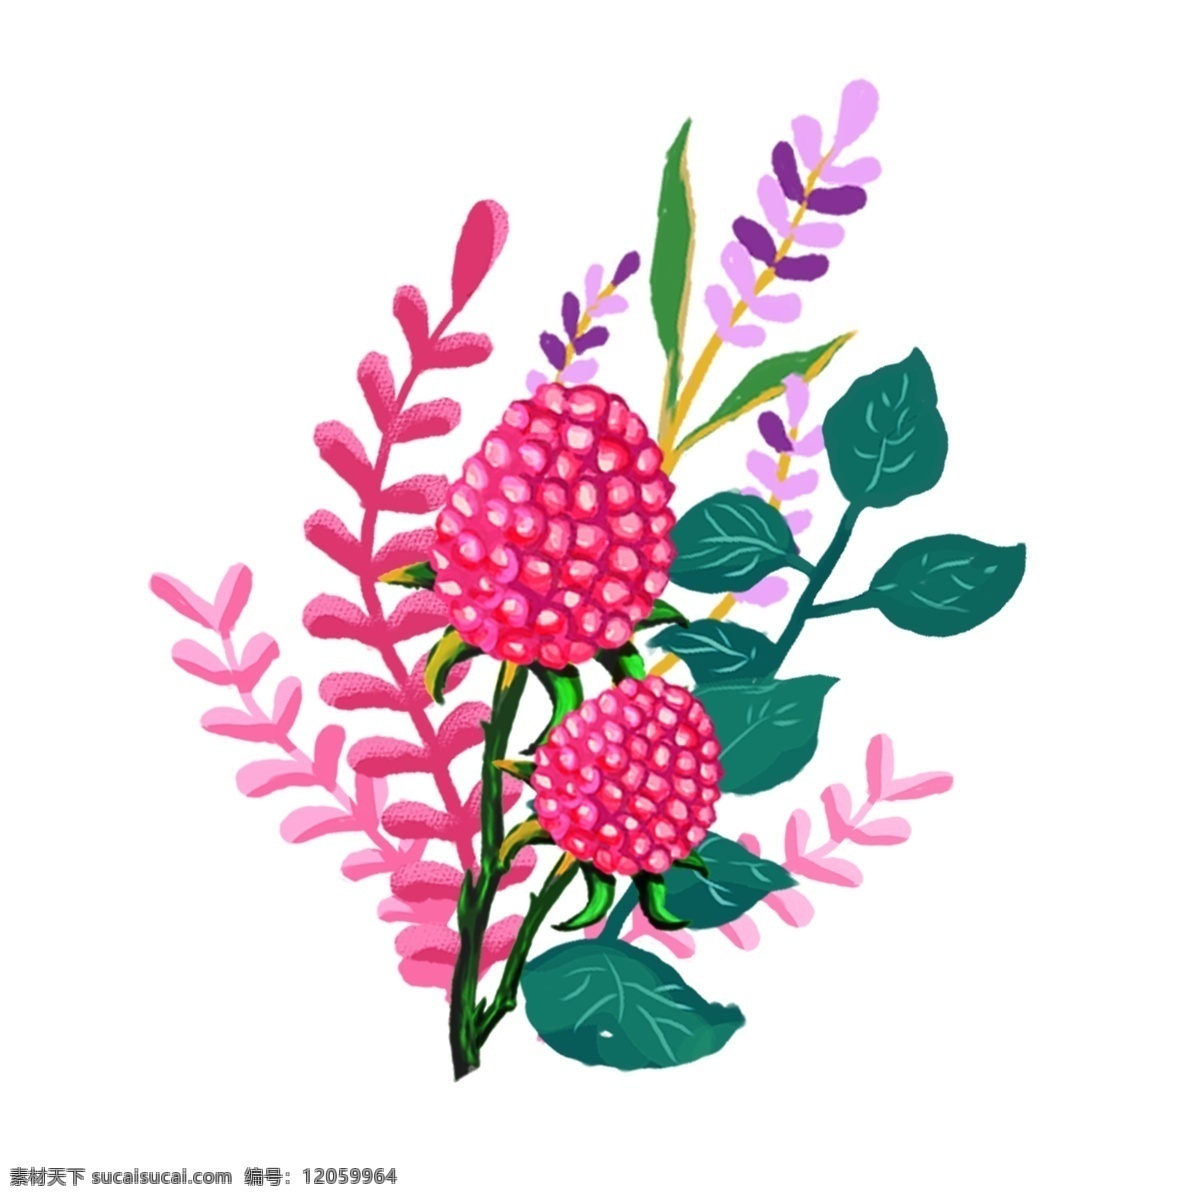 清新 红色 粉色 红 莓 果 绿叶 植物 花束 手绘 植物花束 叶子 花园元素 元素 红莓果 莓果 淡紫色 紫色 花朵 手绘元素 手机配图 文章配图 手机壁纸 壁纸 花